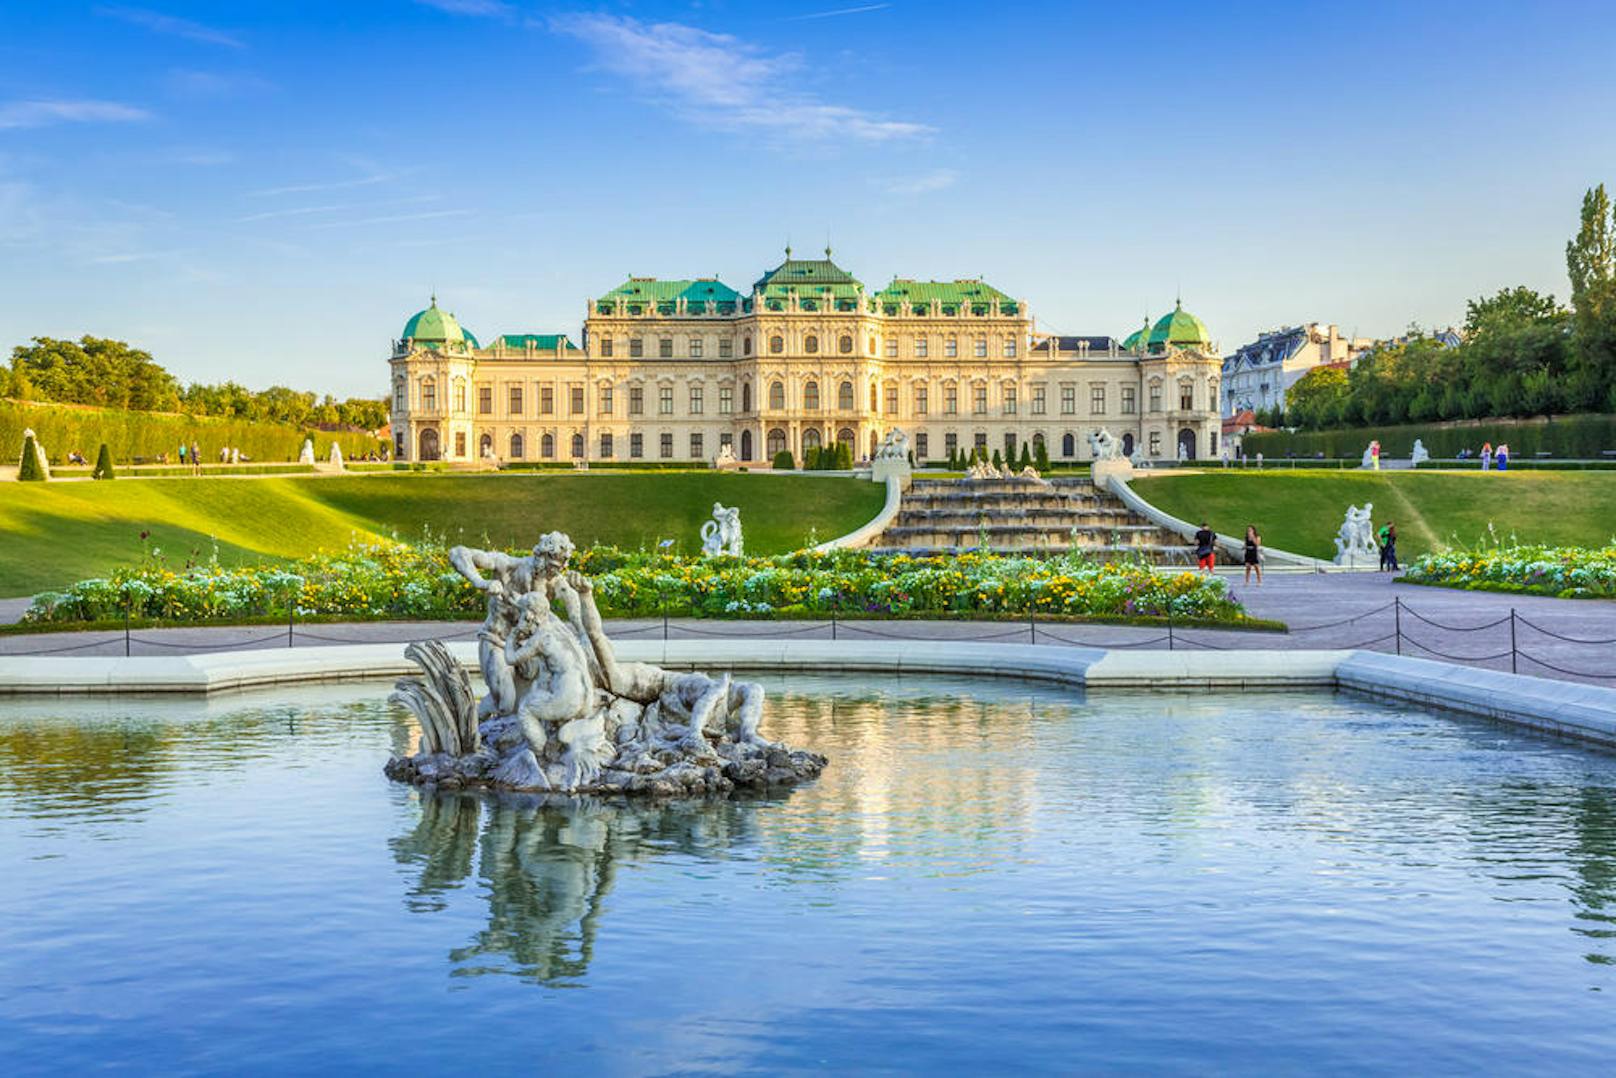 <b>Schloss Belvedere, 3. Bezirk:</b> Das Schloss Belvedere wurde von Johann Lucas von Hildebrandt für Prinz Eugen von Savoyen gebaut. Im Oberen Belvedere wurde am 15. Mai 1955 der Staatsvertrag unterzeichnet.